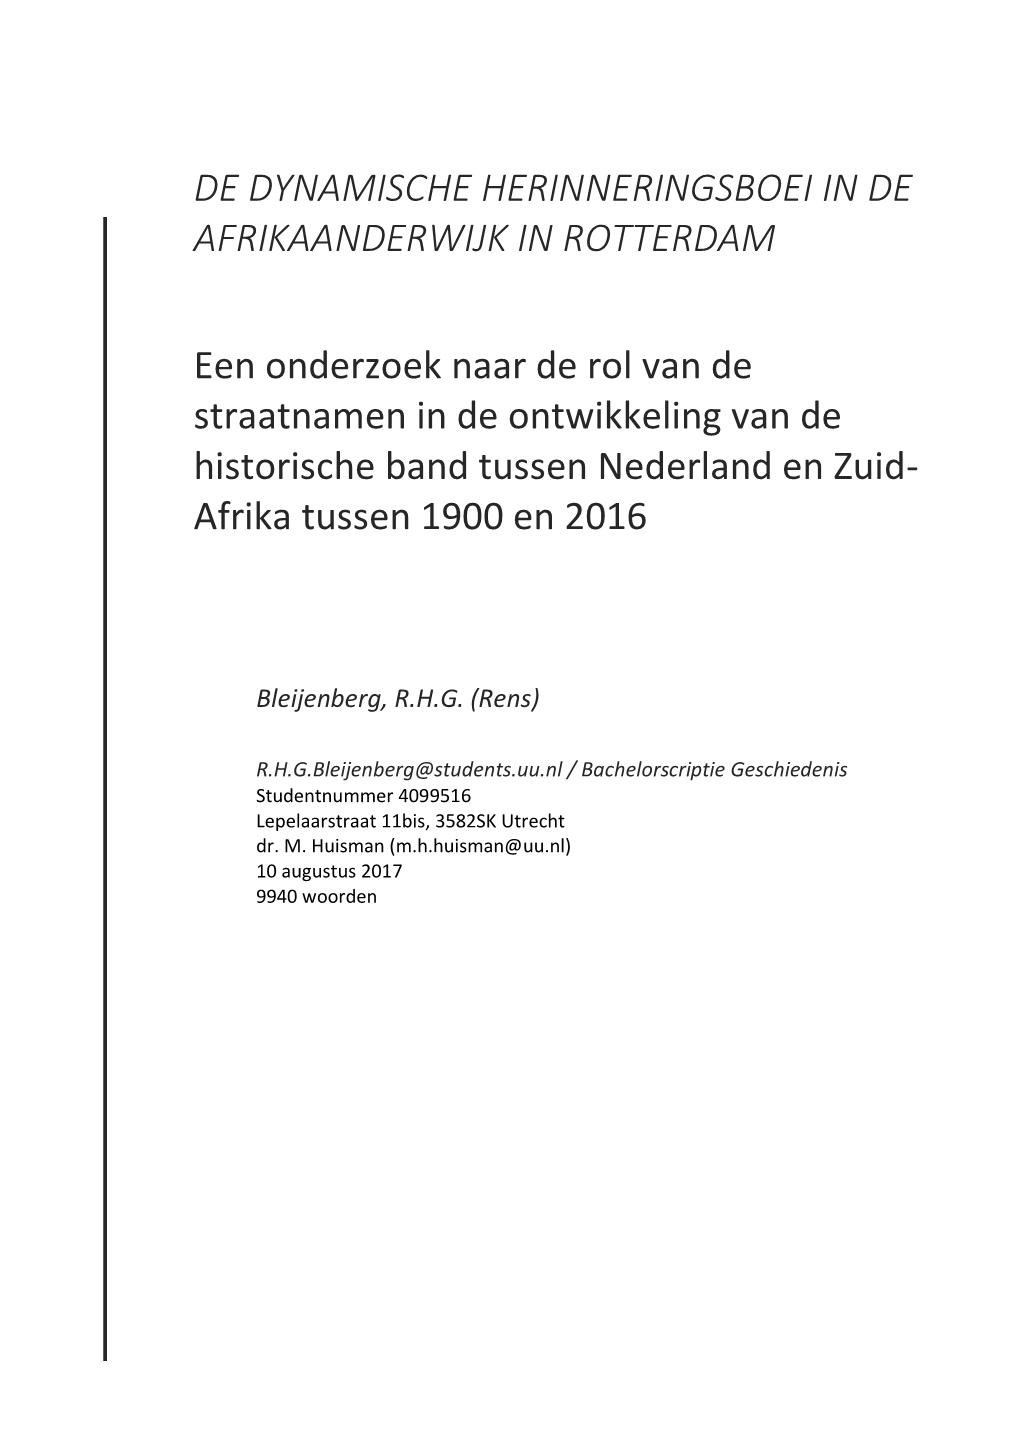 De Dynamische Herinneringsboei in De Afrikaanderwijk in Rotterdam